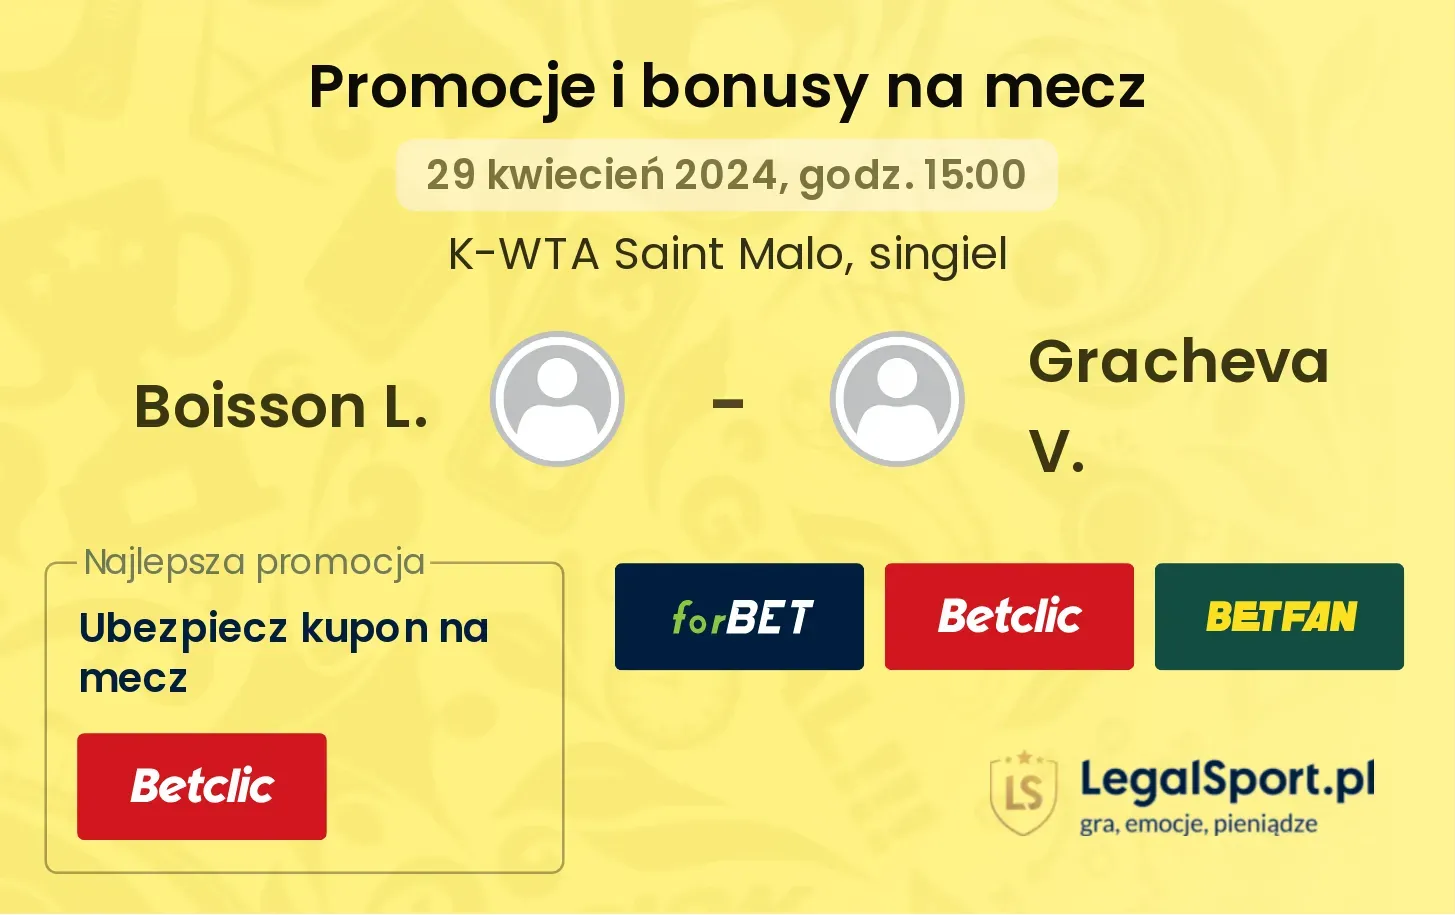 Boisson L. - Gracheva V. promocje bonusy na mecz